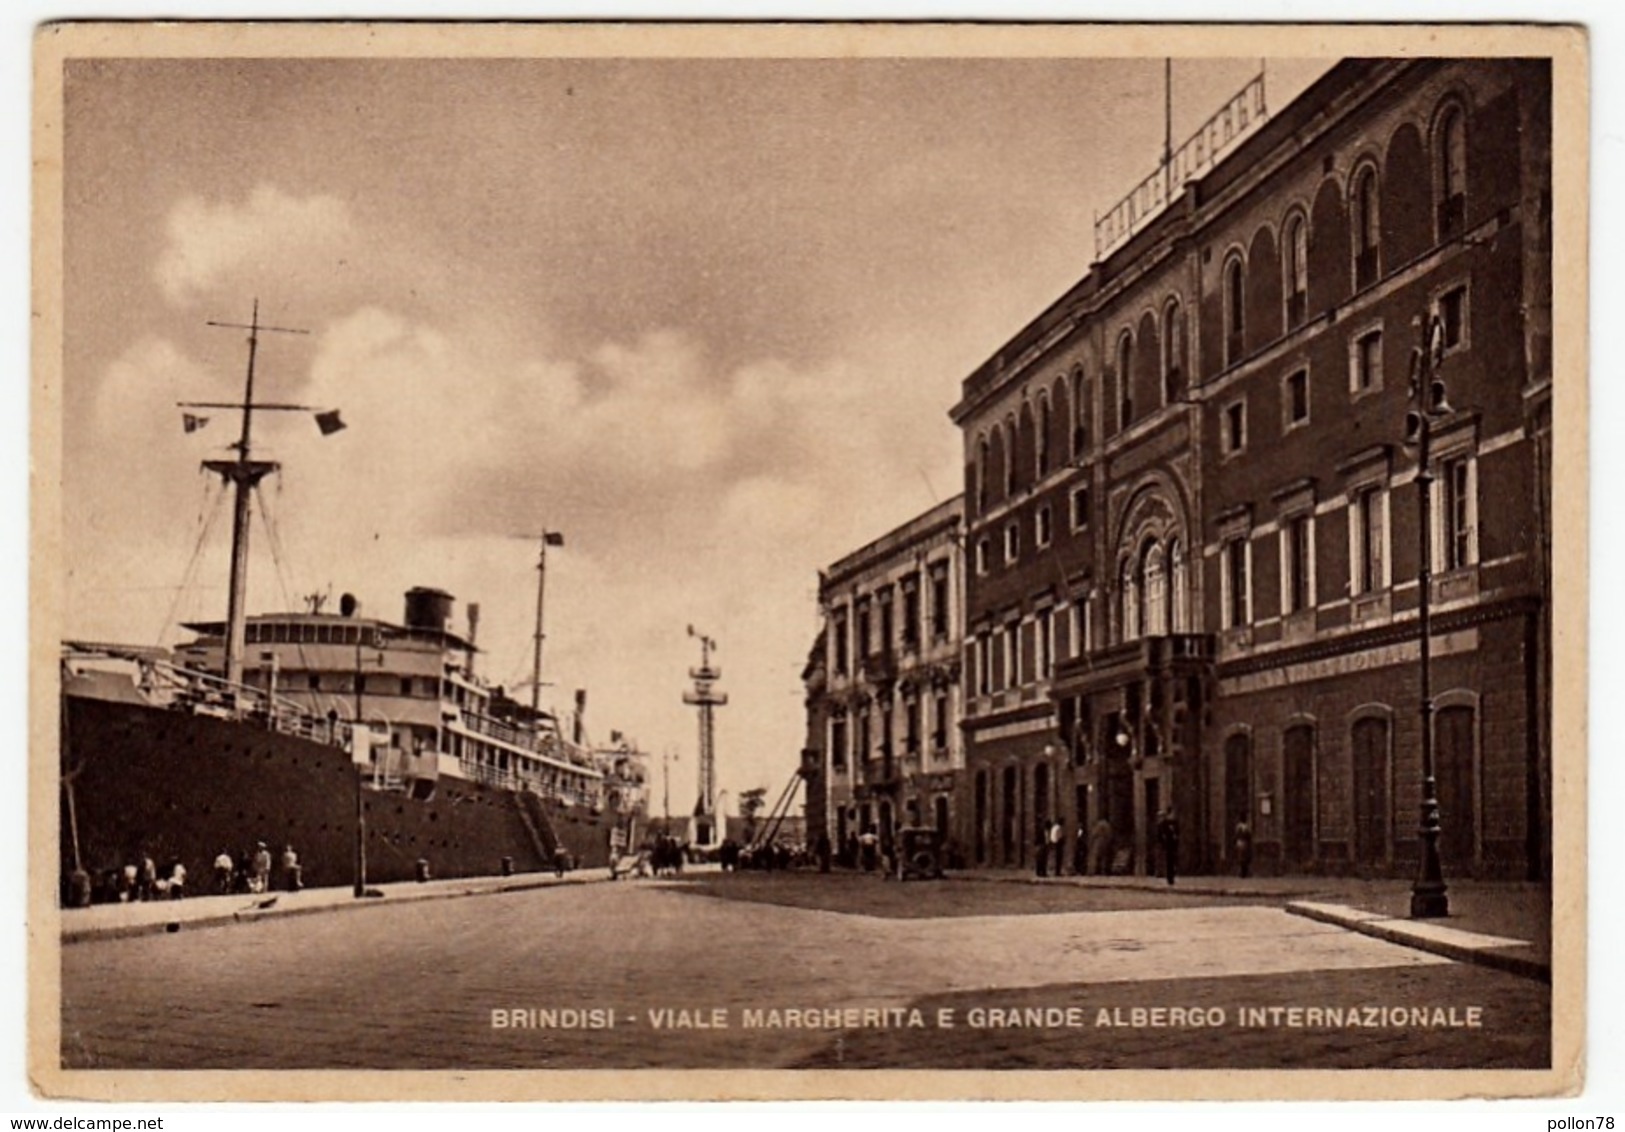 BRINDISI - VIALE MARGHERITA E GRANDE ALBERGO INTERNAZIONALE - 1949 - NAVI - BARCHE - Brindisi